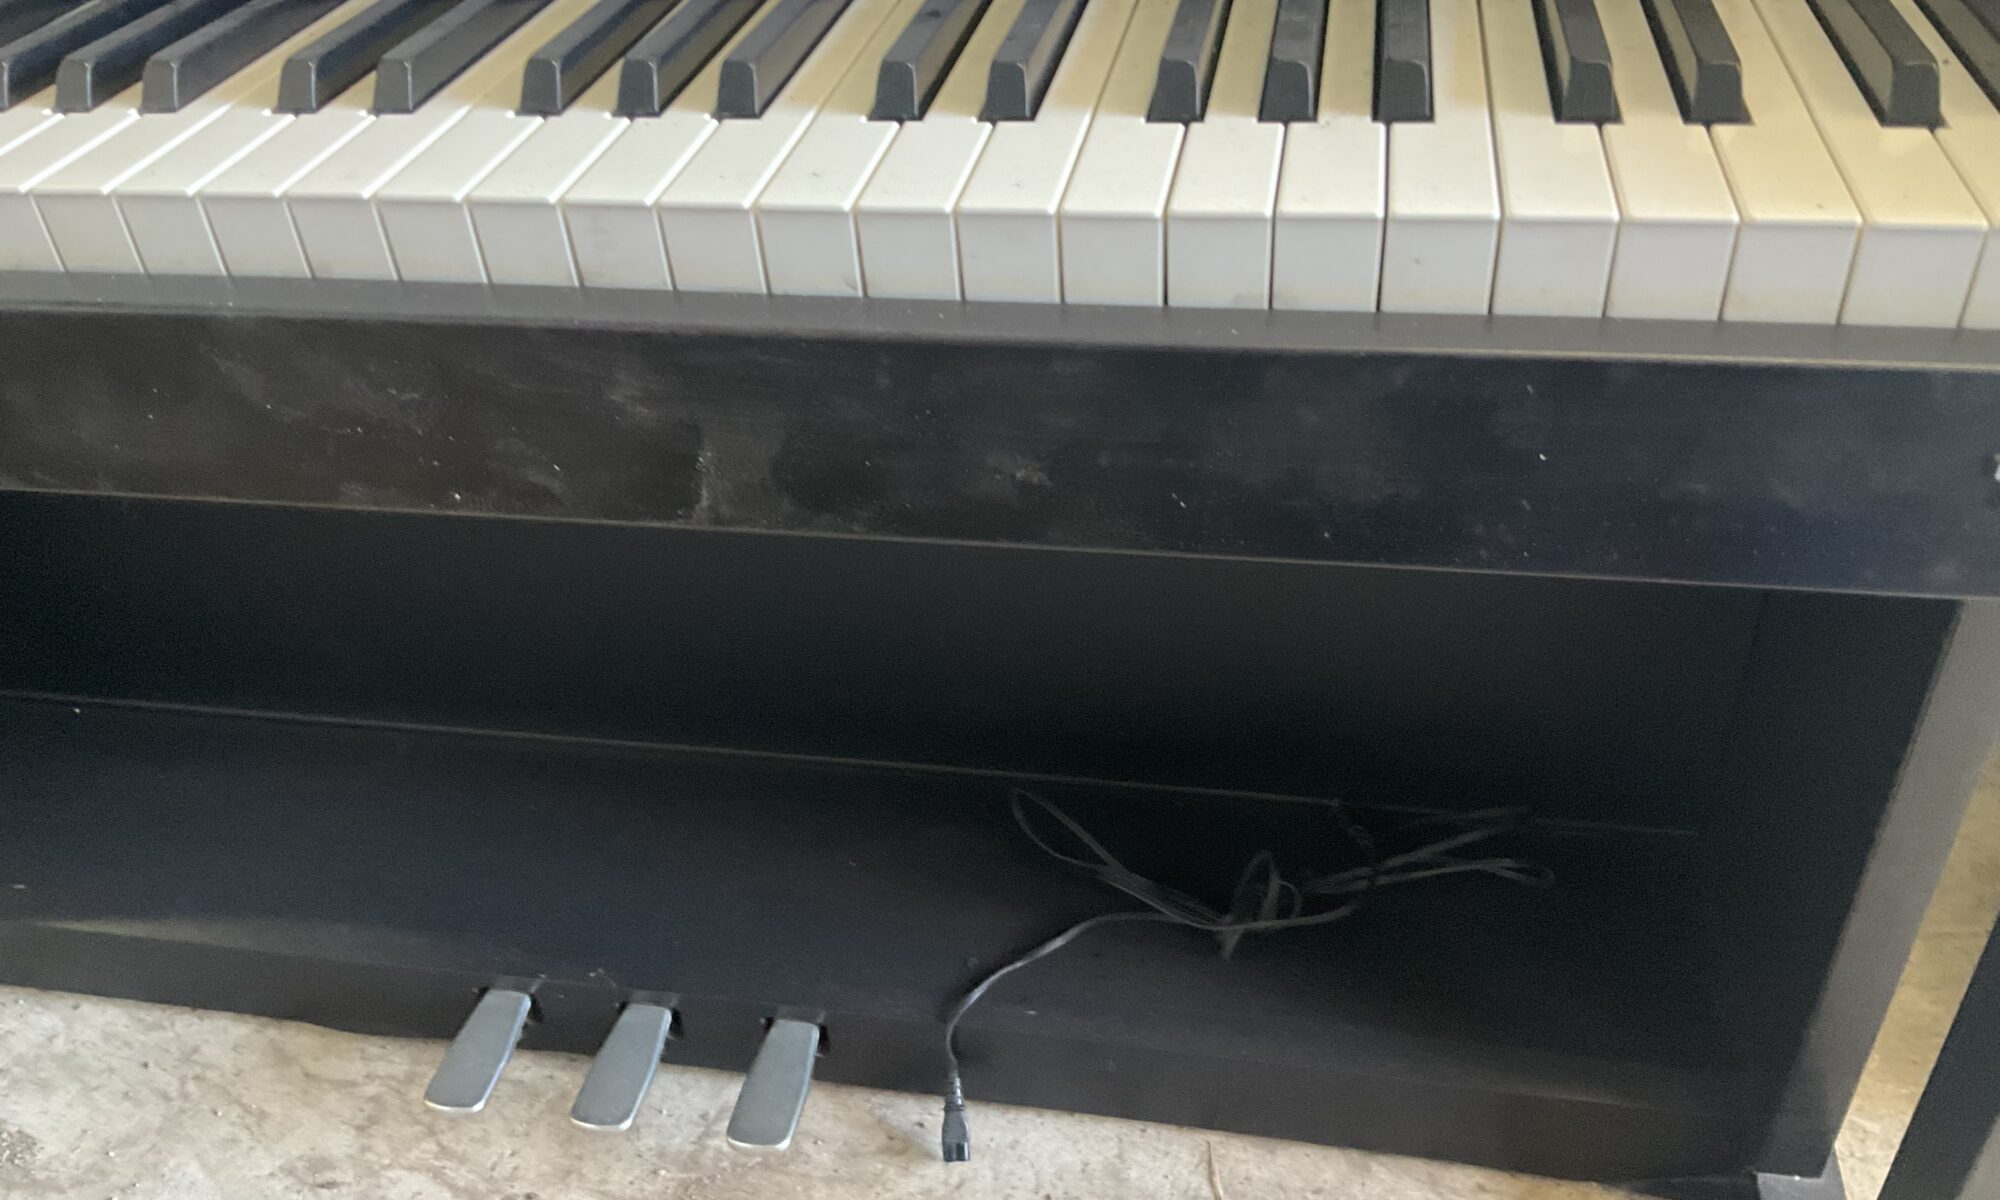 福山市で不用品回収した電子ピアノ